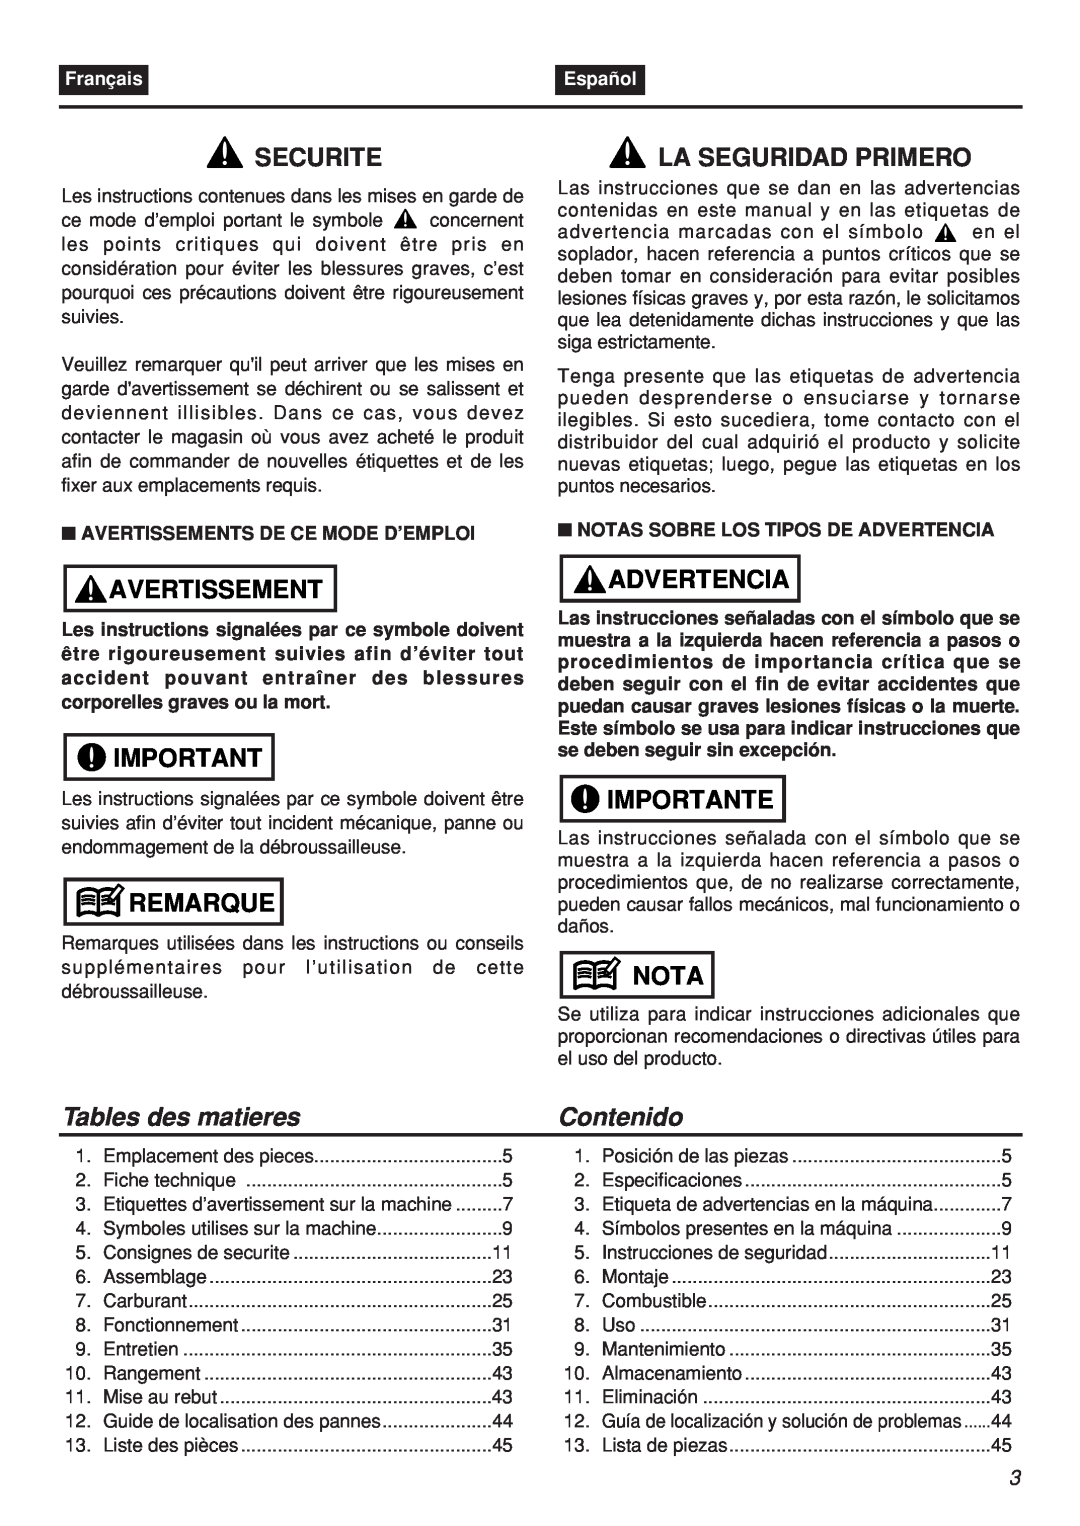 Zenoah EBZ100-CA manual Securite, Avertissement, Remarque, La Seguridad Primero, Advertencia, Importante, Nota, Contenido 